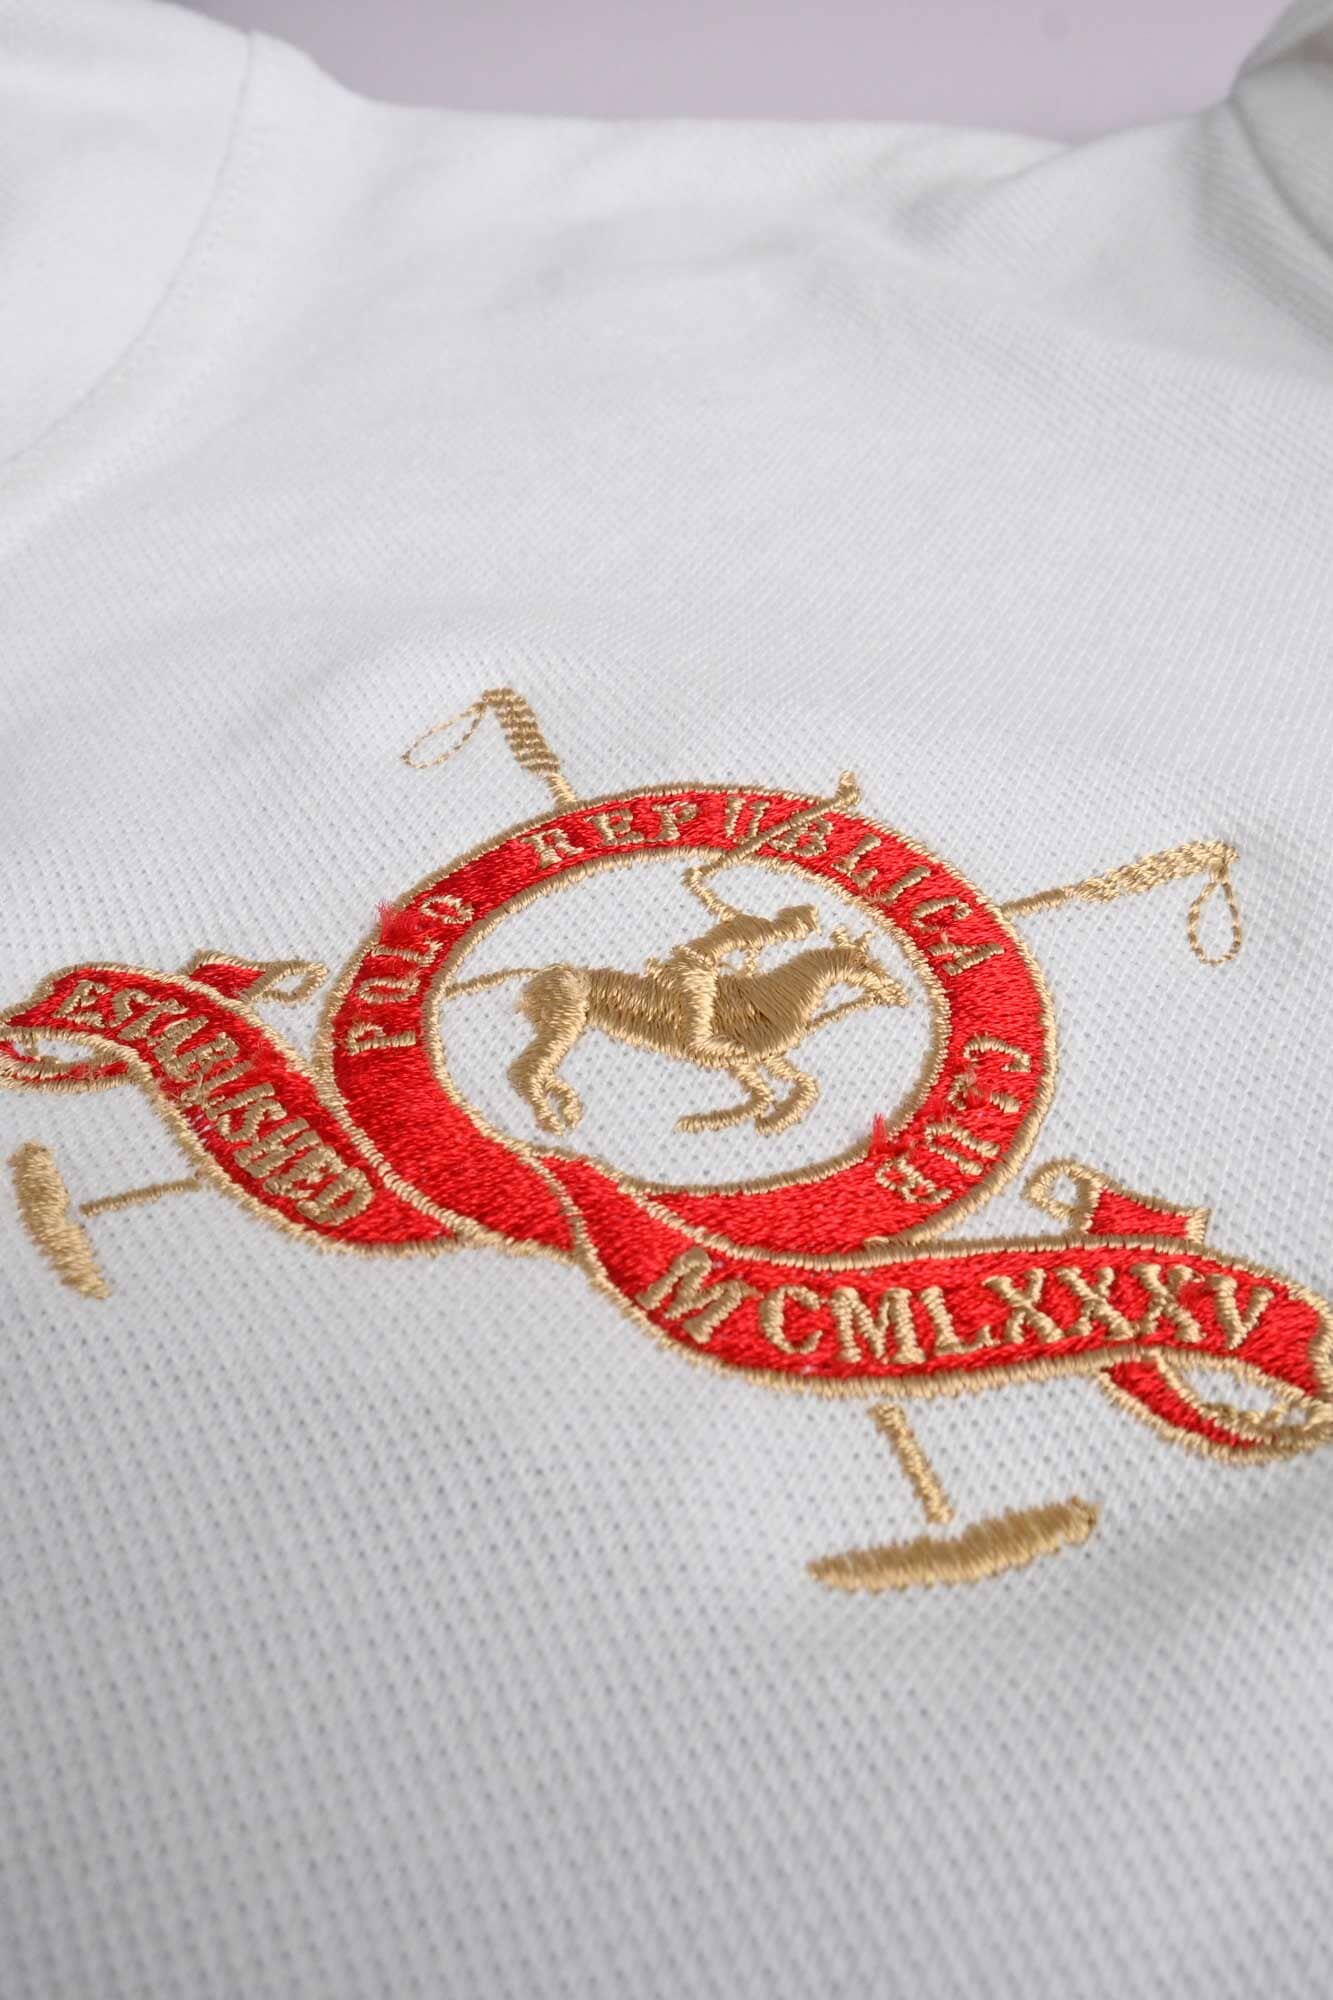 Polo Republica Men's Horse Rider & 5 Embroidered Short Sleeve Polo Shirt Men's Polo Shirt Polo Republica 